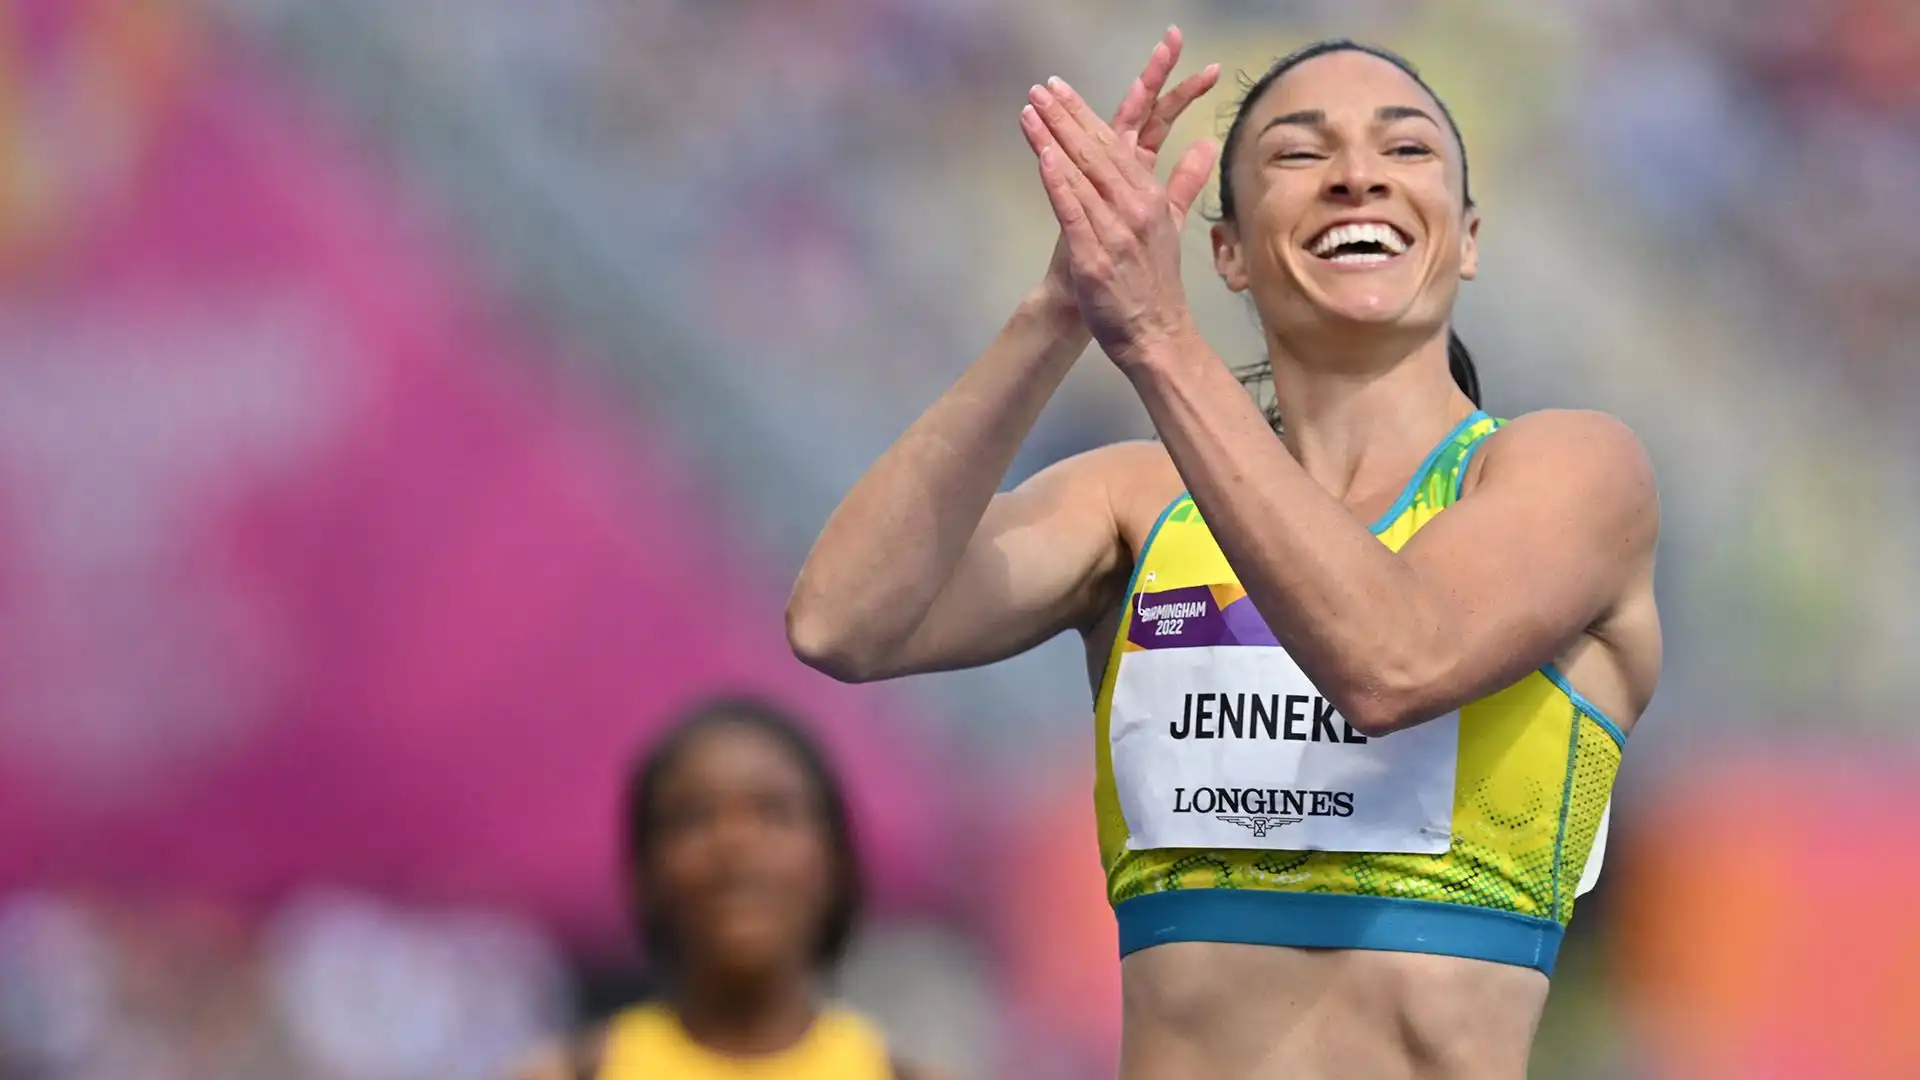 Nel weekend Michelle Jenneke ha vinto la medaglia d'oro nei 100 metri ad ostacoli nelle gare del New South Wales, evidenziano la sua buona forma